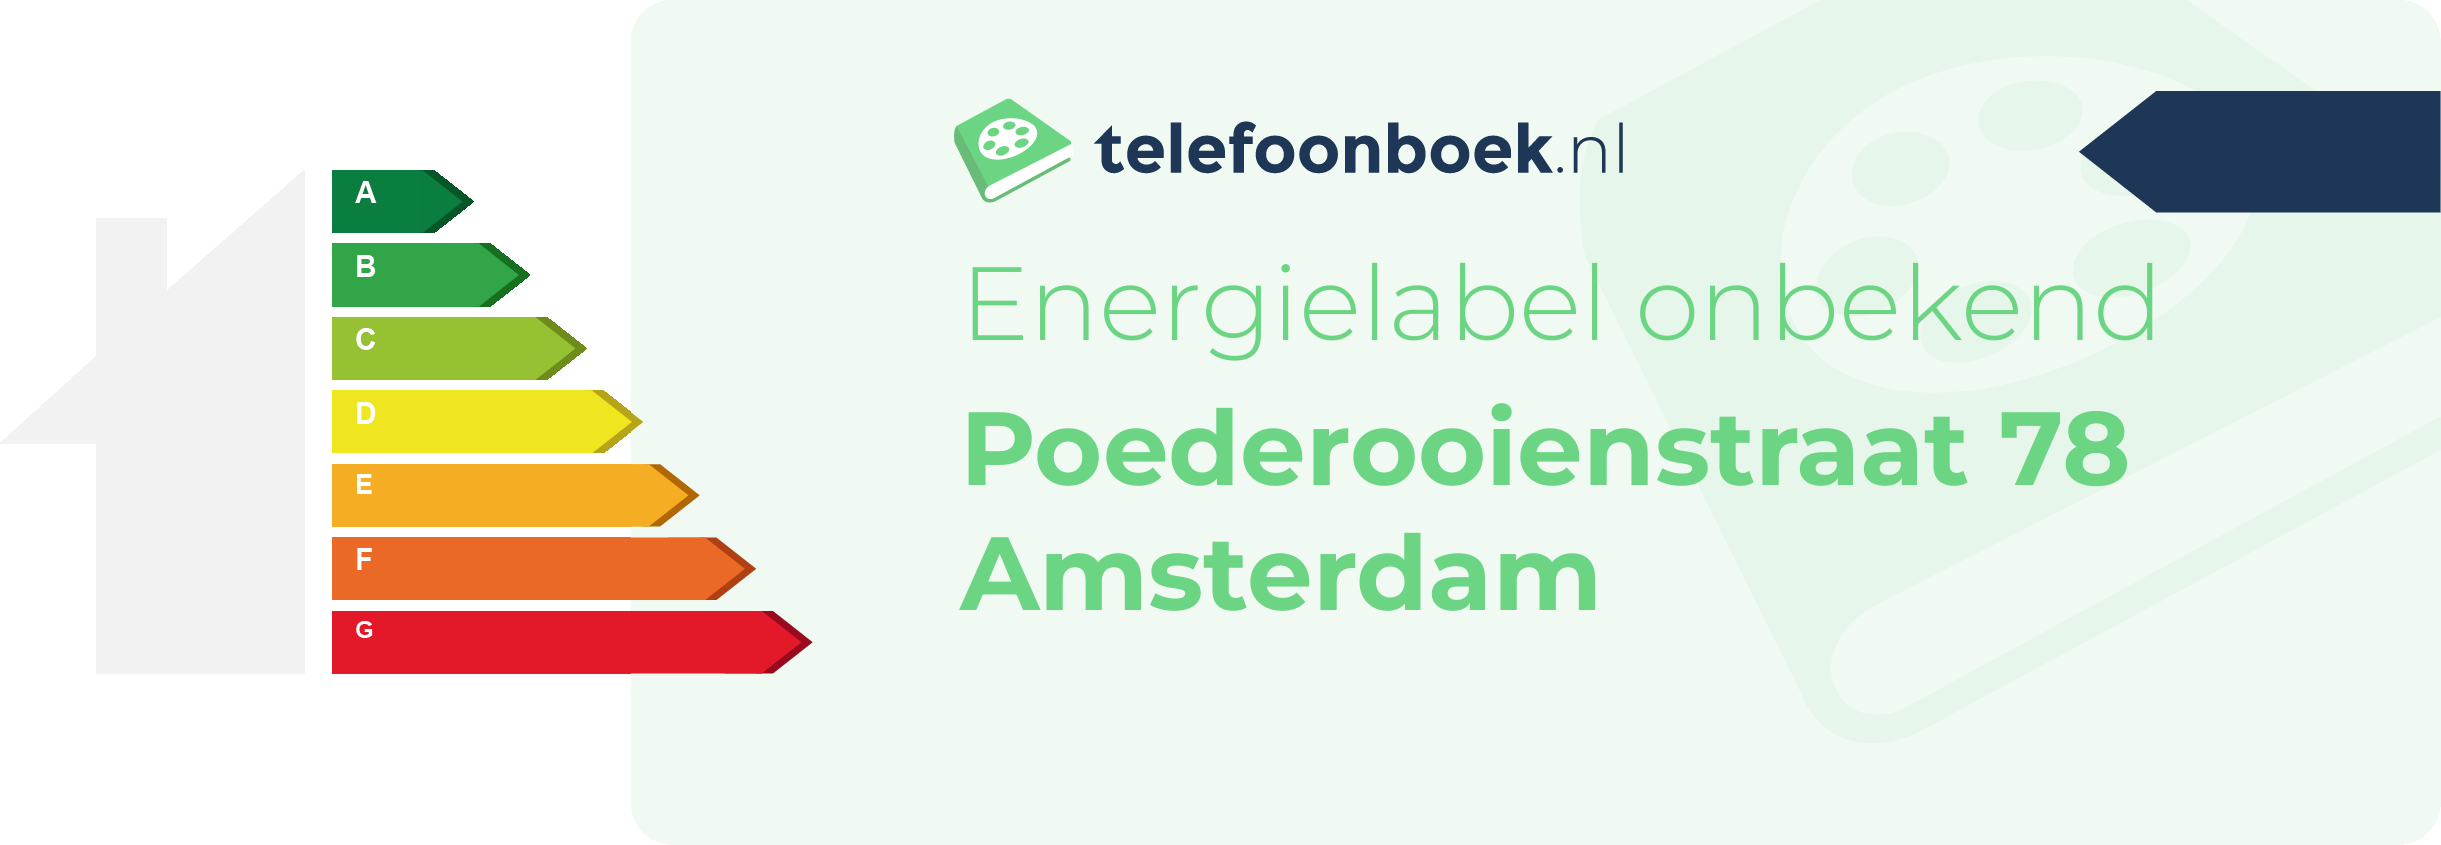 Energielabel Poederooienstraat 78 Amsterdam